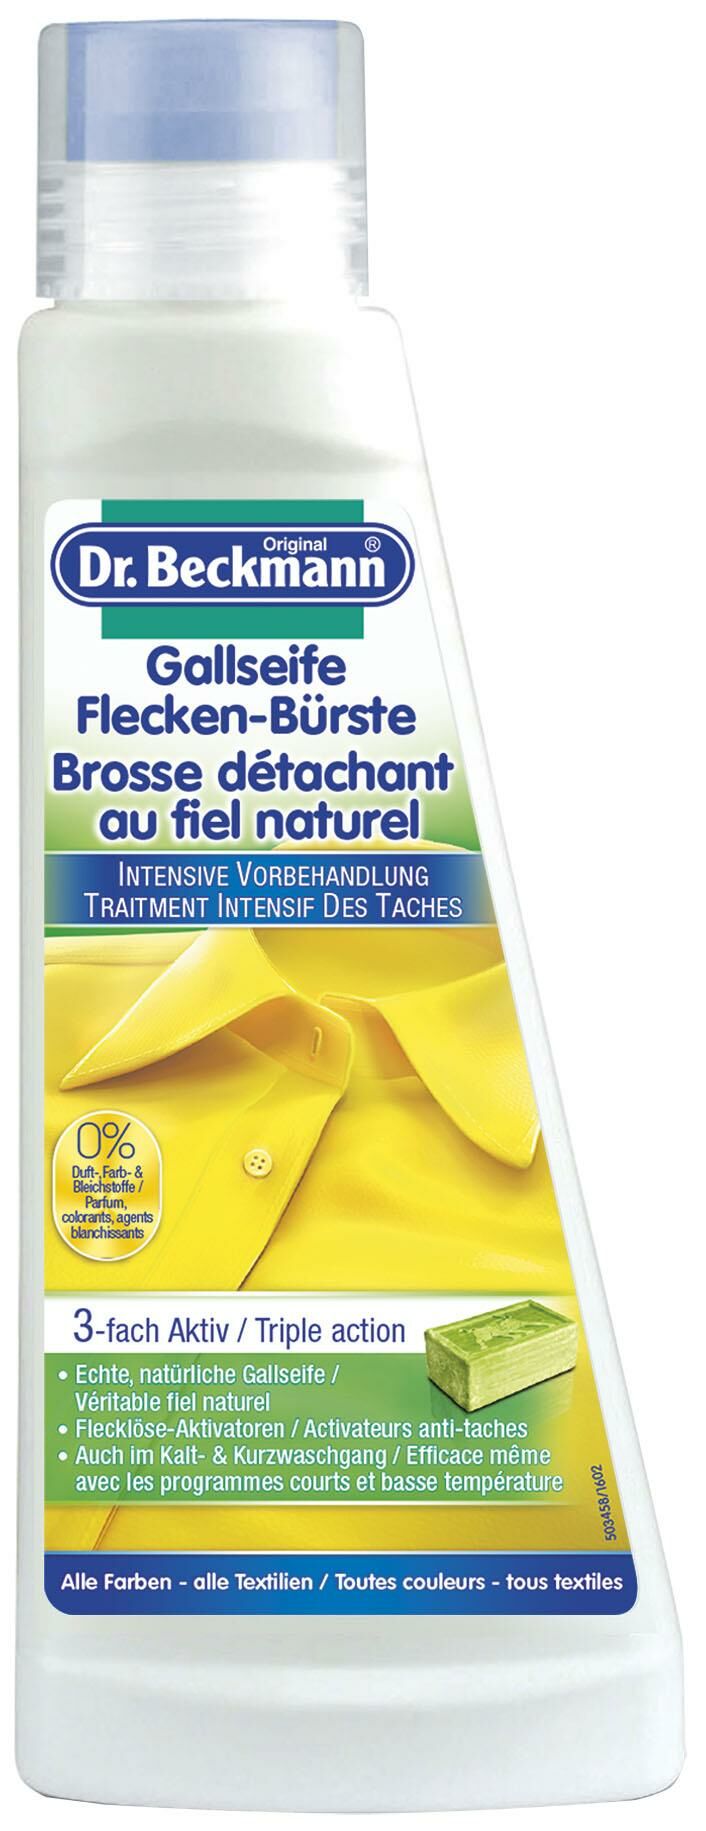 Dr Beckmann PreWash brosse détachante au fiel naturel 250 ml à petit prix